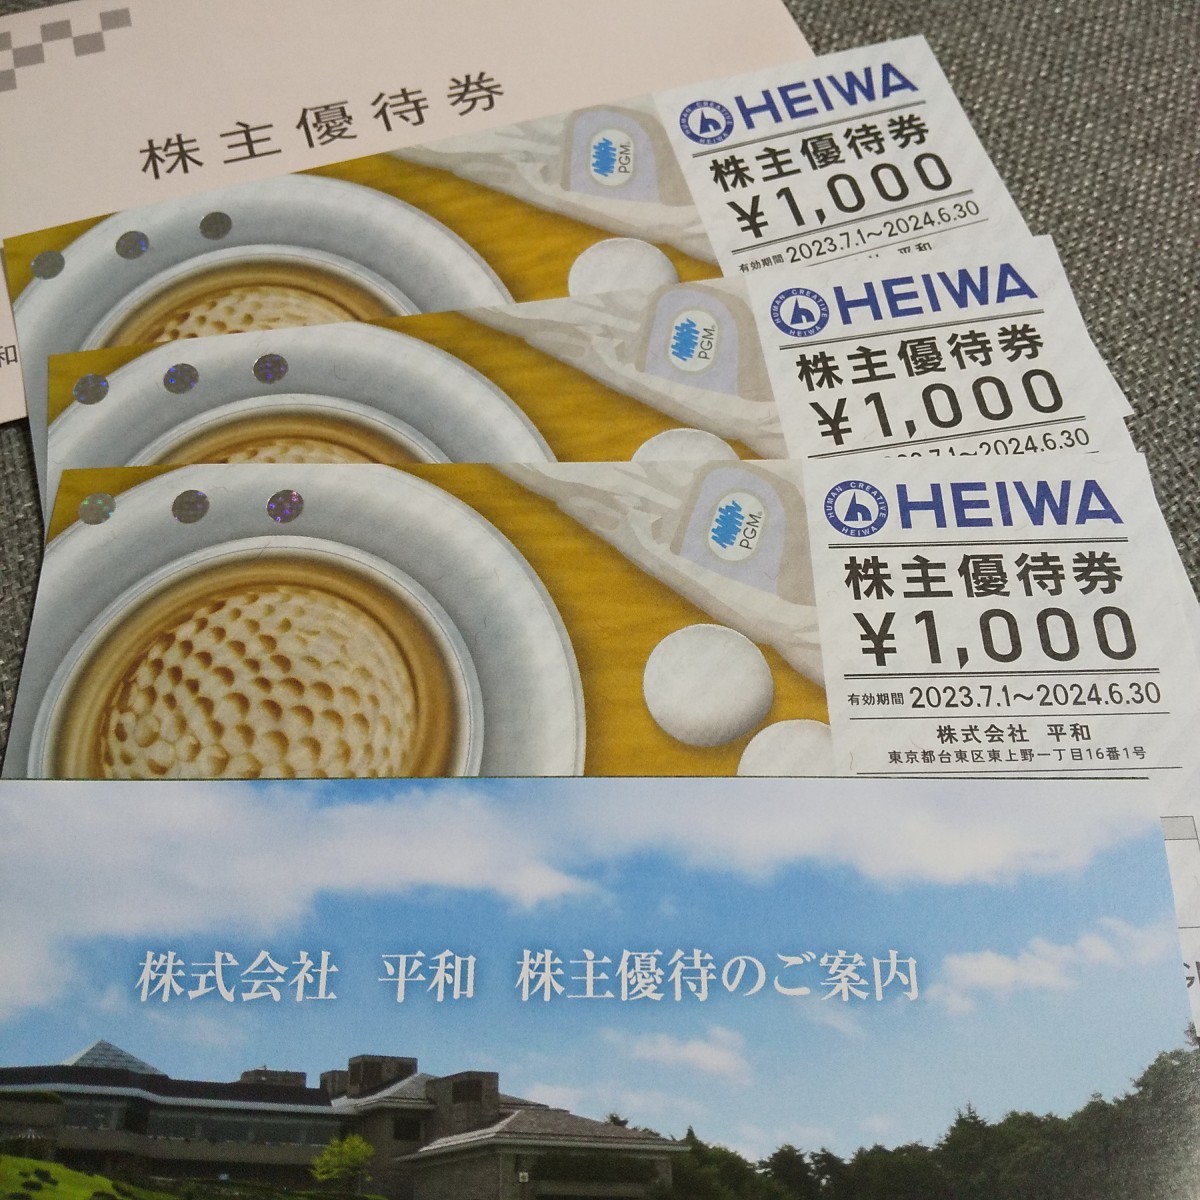 ☆有効期限2024.6.30☆3000円分 HEIWA 平和 株主優待 割引券 ゴルフ